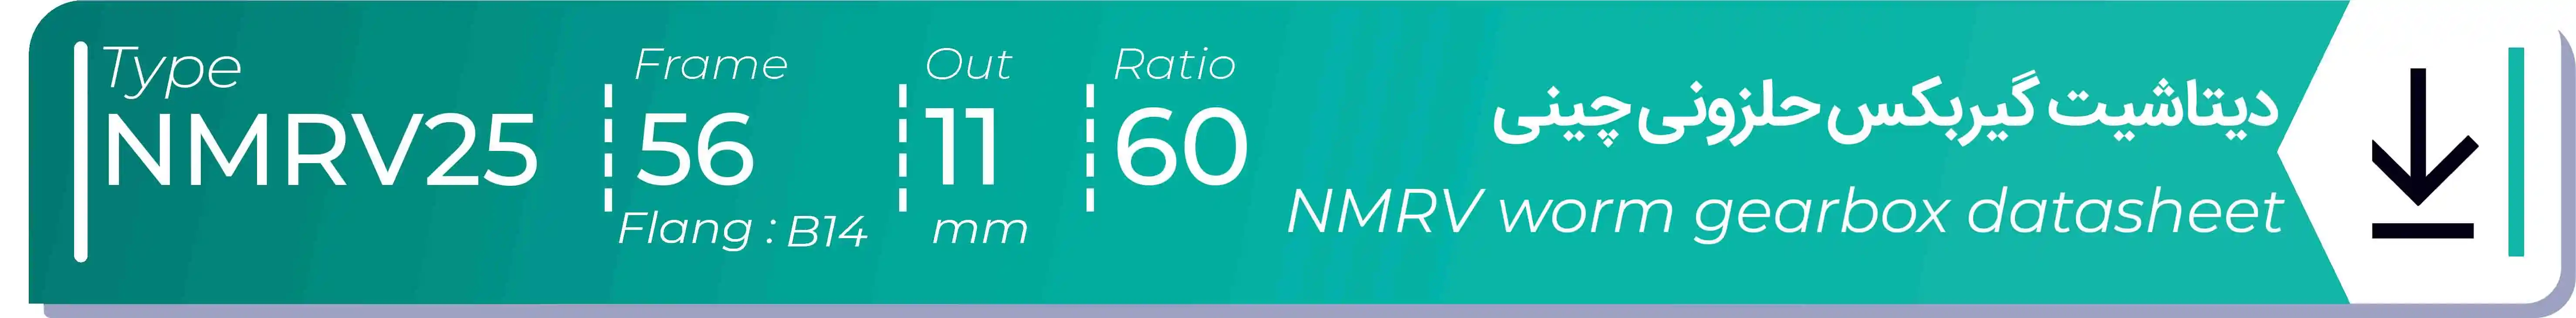  دیتاشیت و مشخصات فنی گیربکس حلزونی چینی   NMRV25  -  با خروجی 11- میلی متر و نسبت60